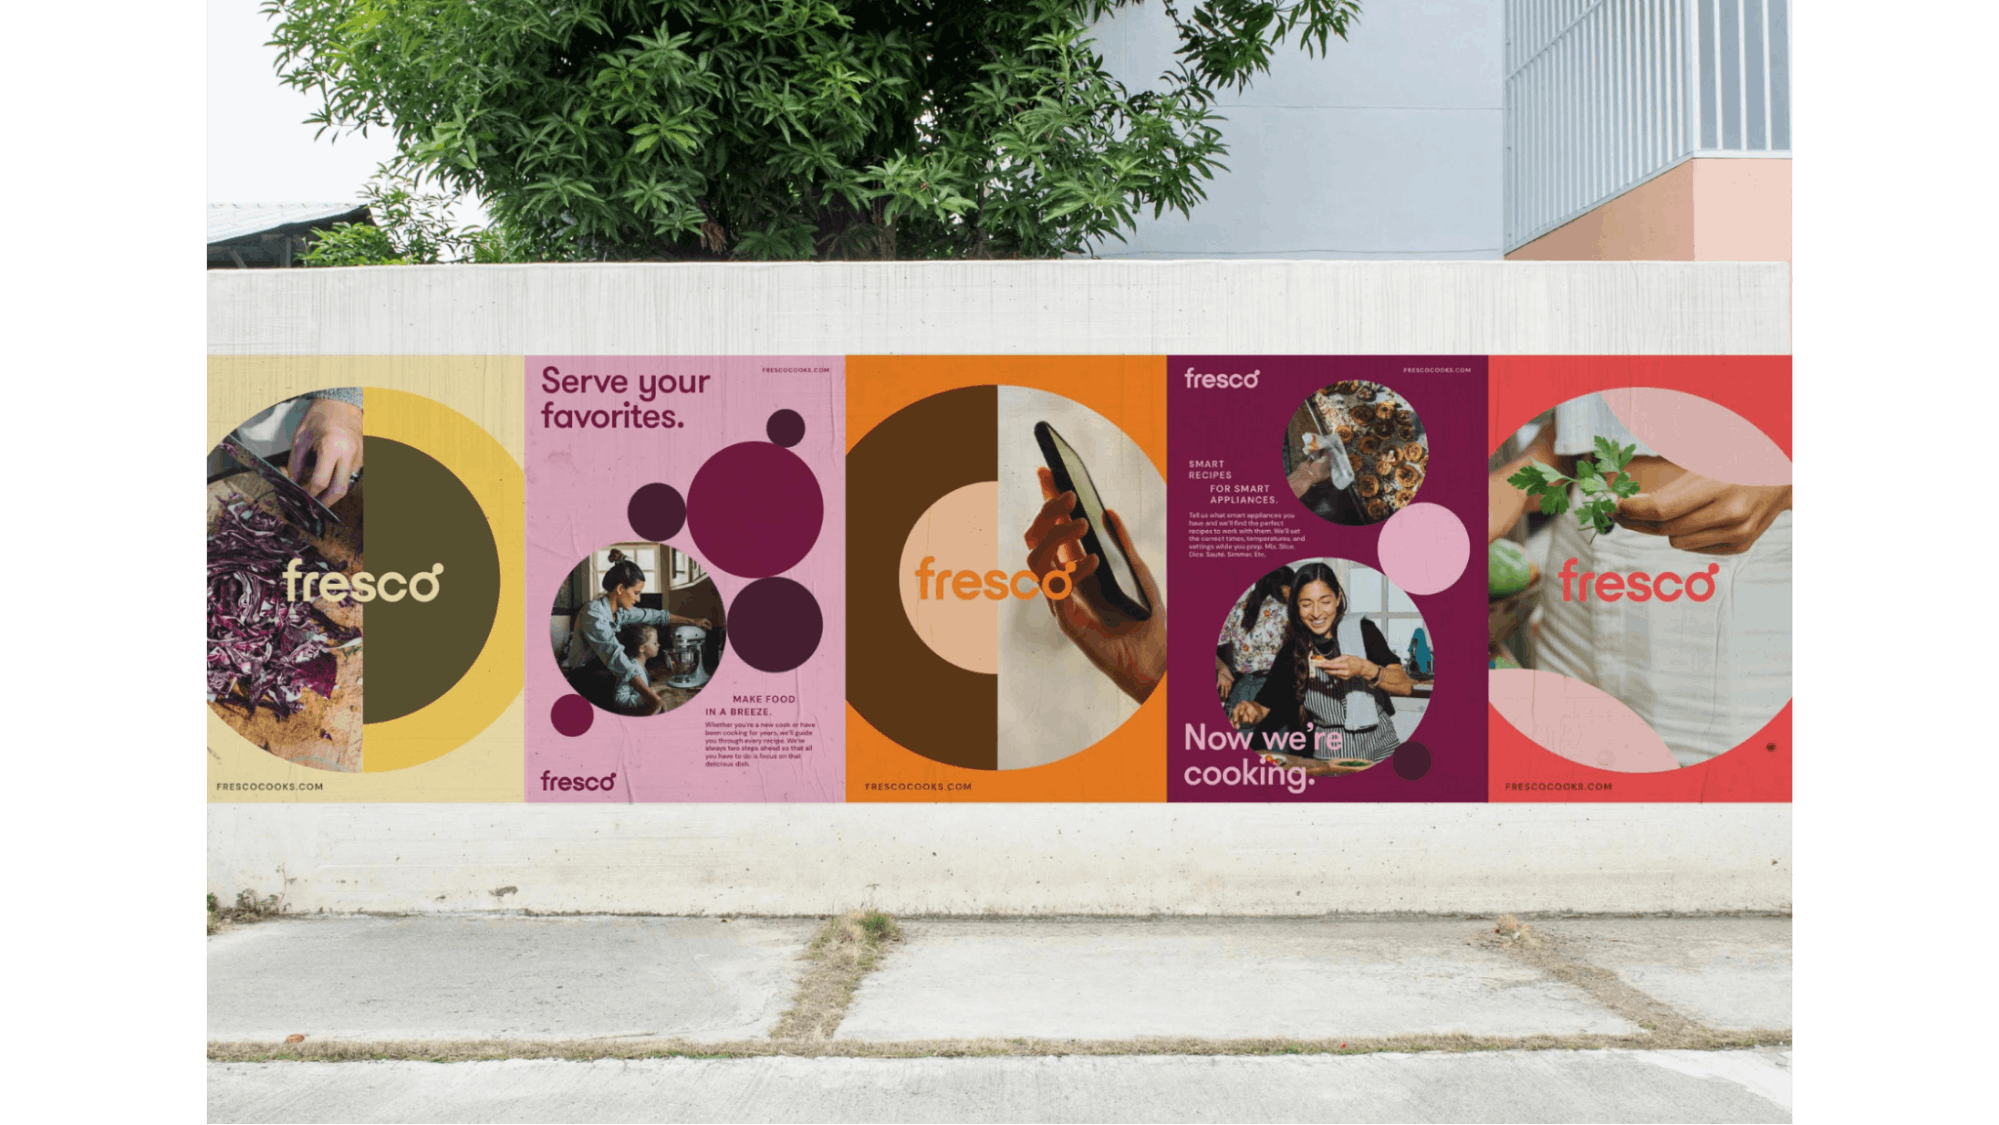 Fresco posters